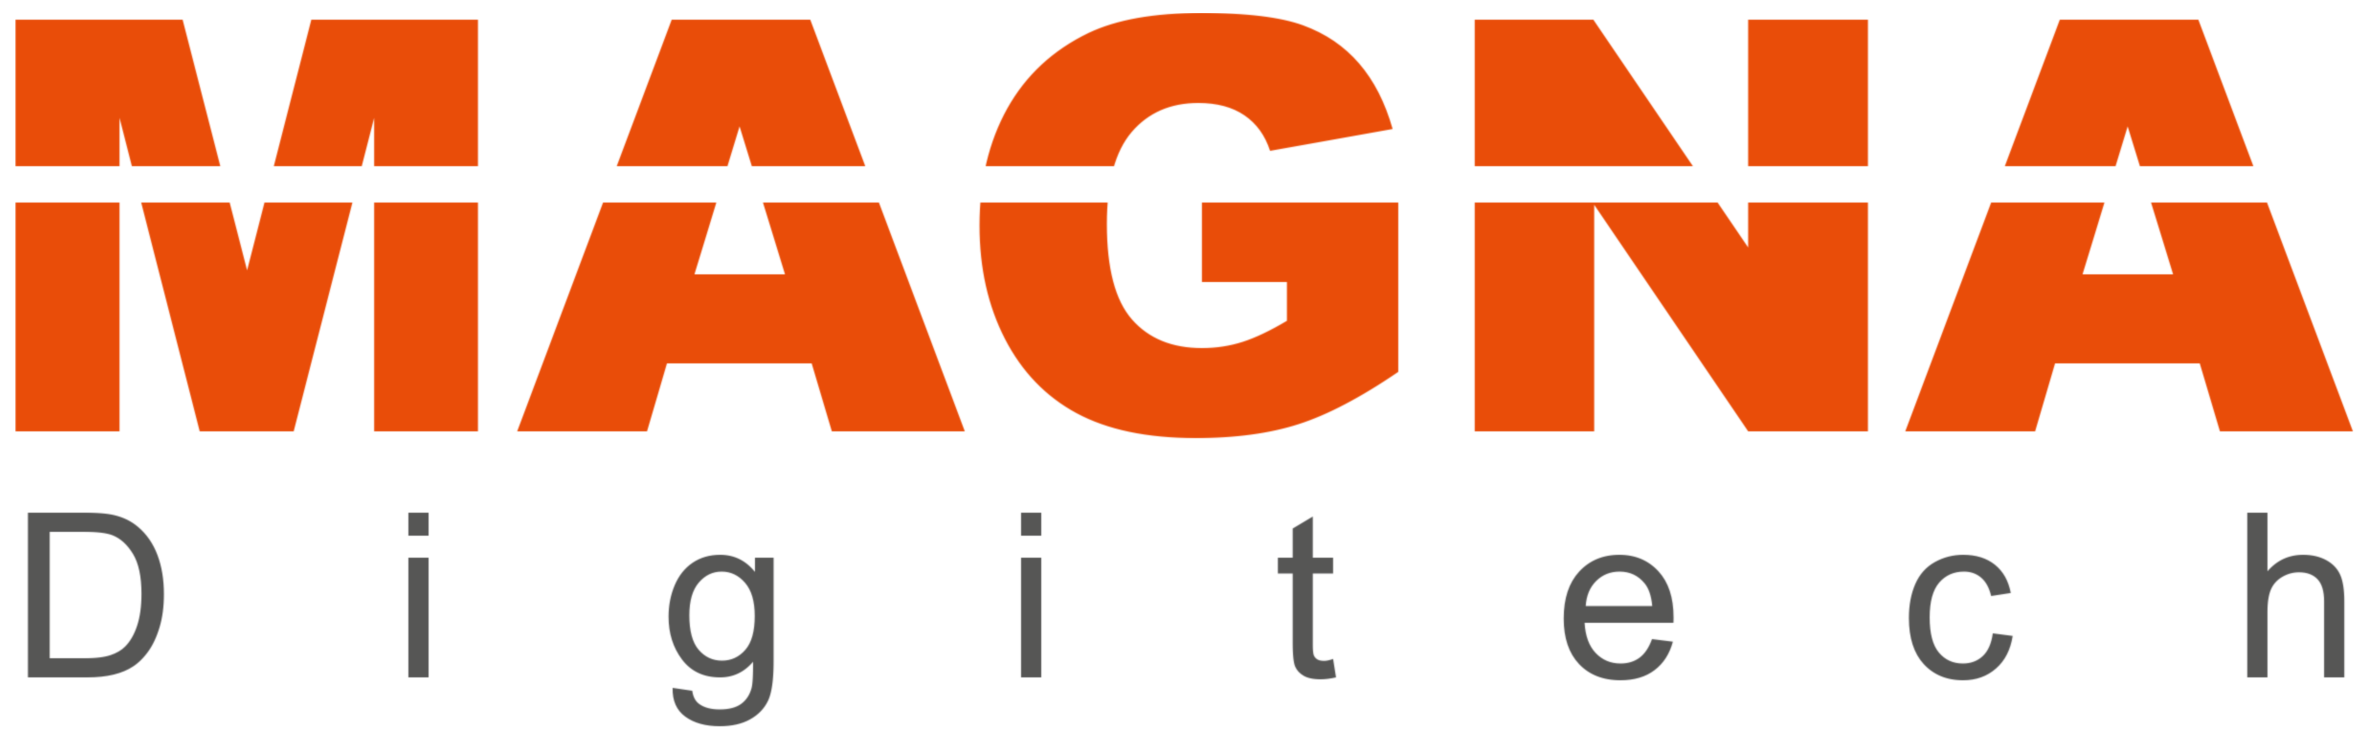 Magna Digitech